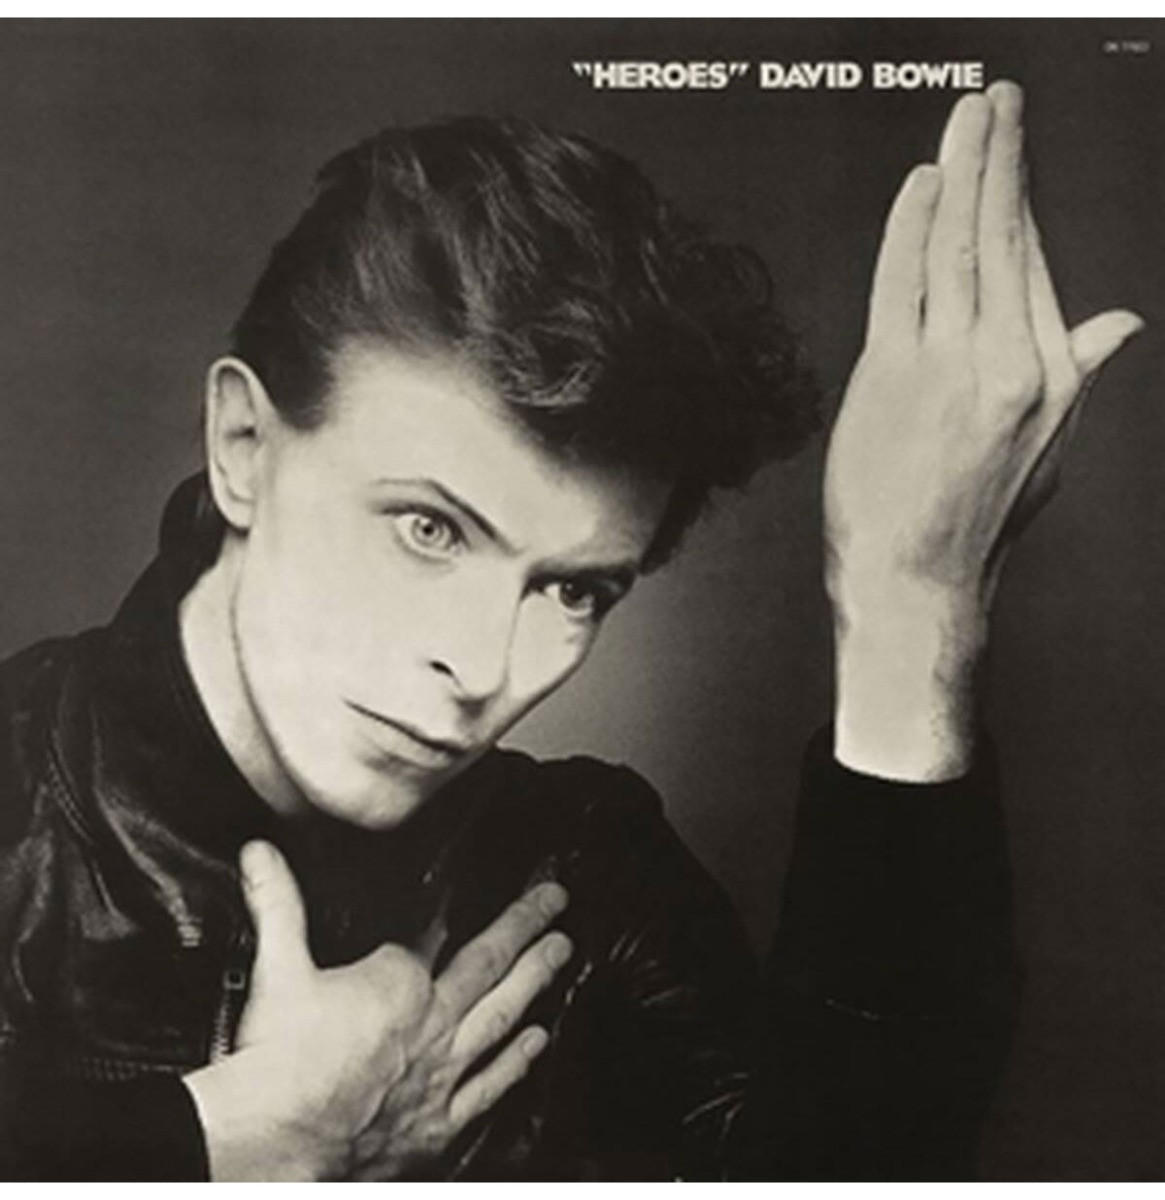 David Bowie - "Heroes" LP